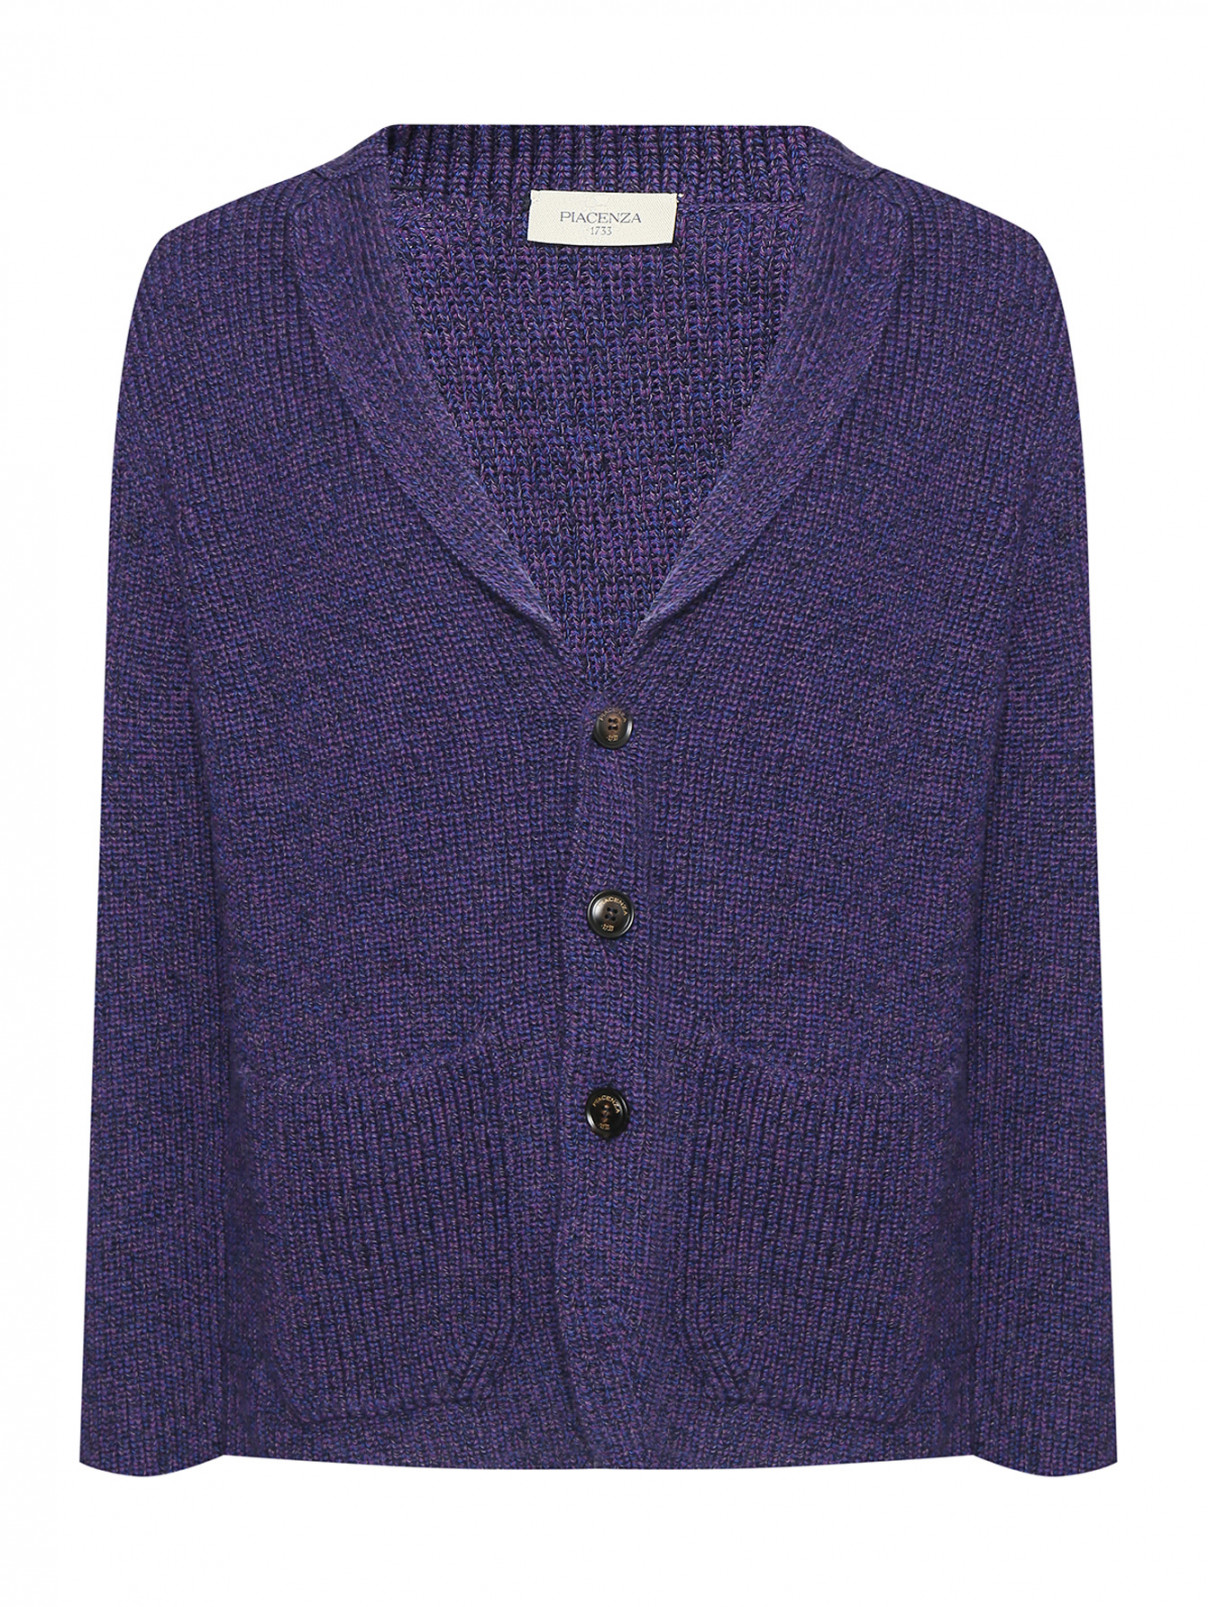 Кардиган из шерсти на пуговицах Piacenza Cashmere  –  Общий вид  – Цвет:  Фиолетовый